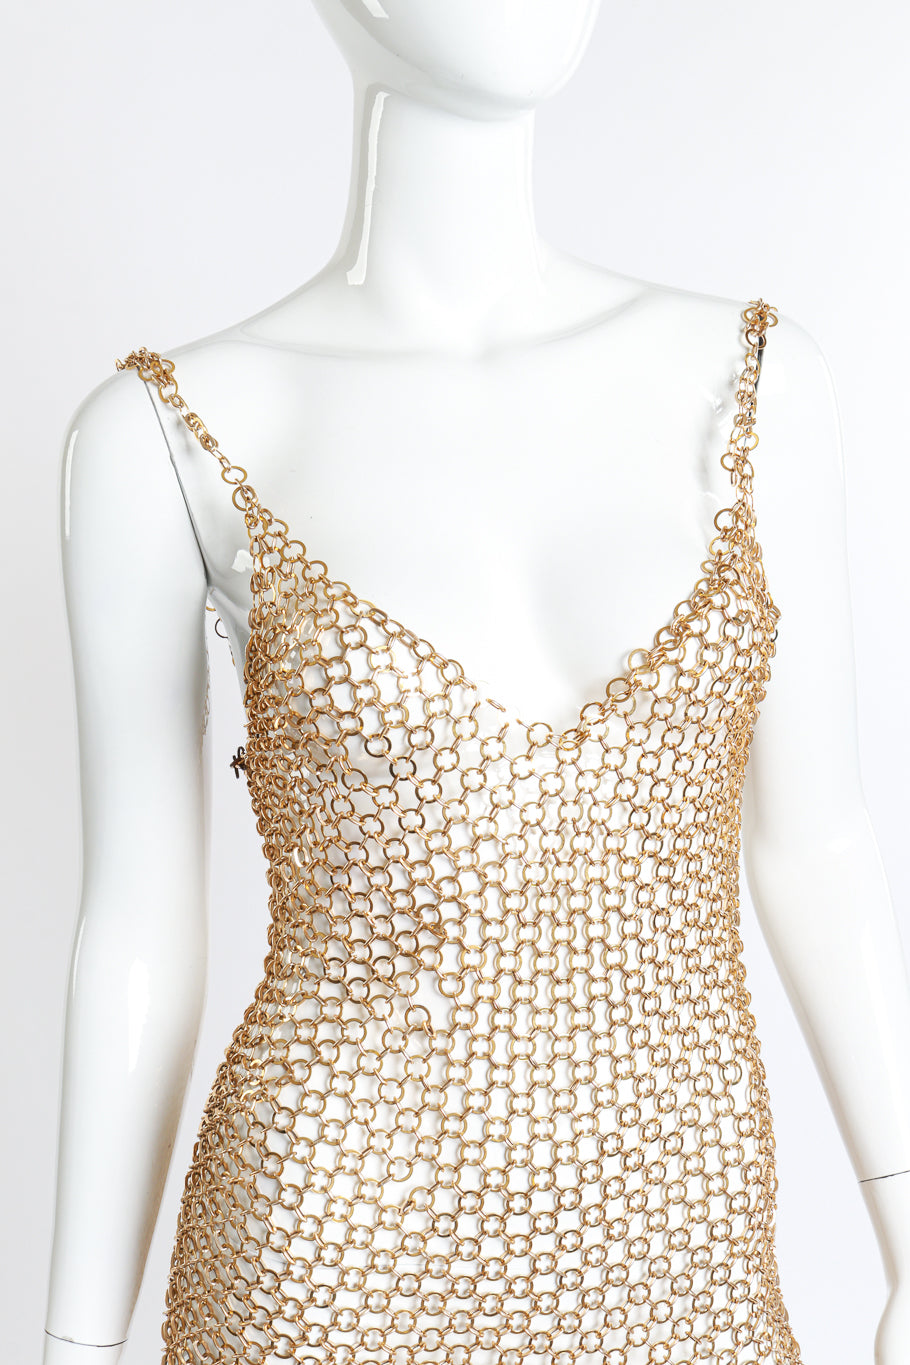 Vintage Hoop Chain Link Dress front on mannequin closeup @recess la